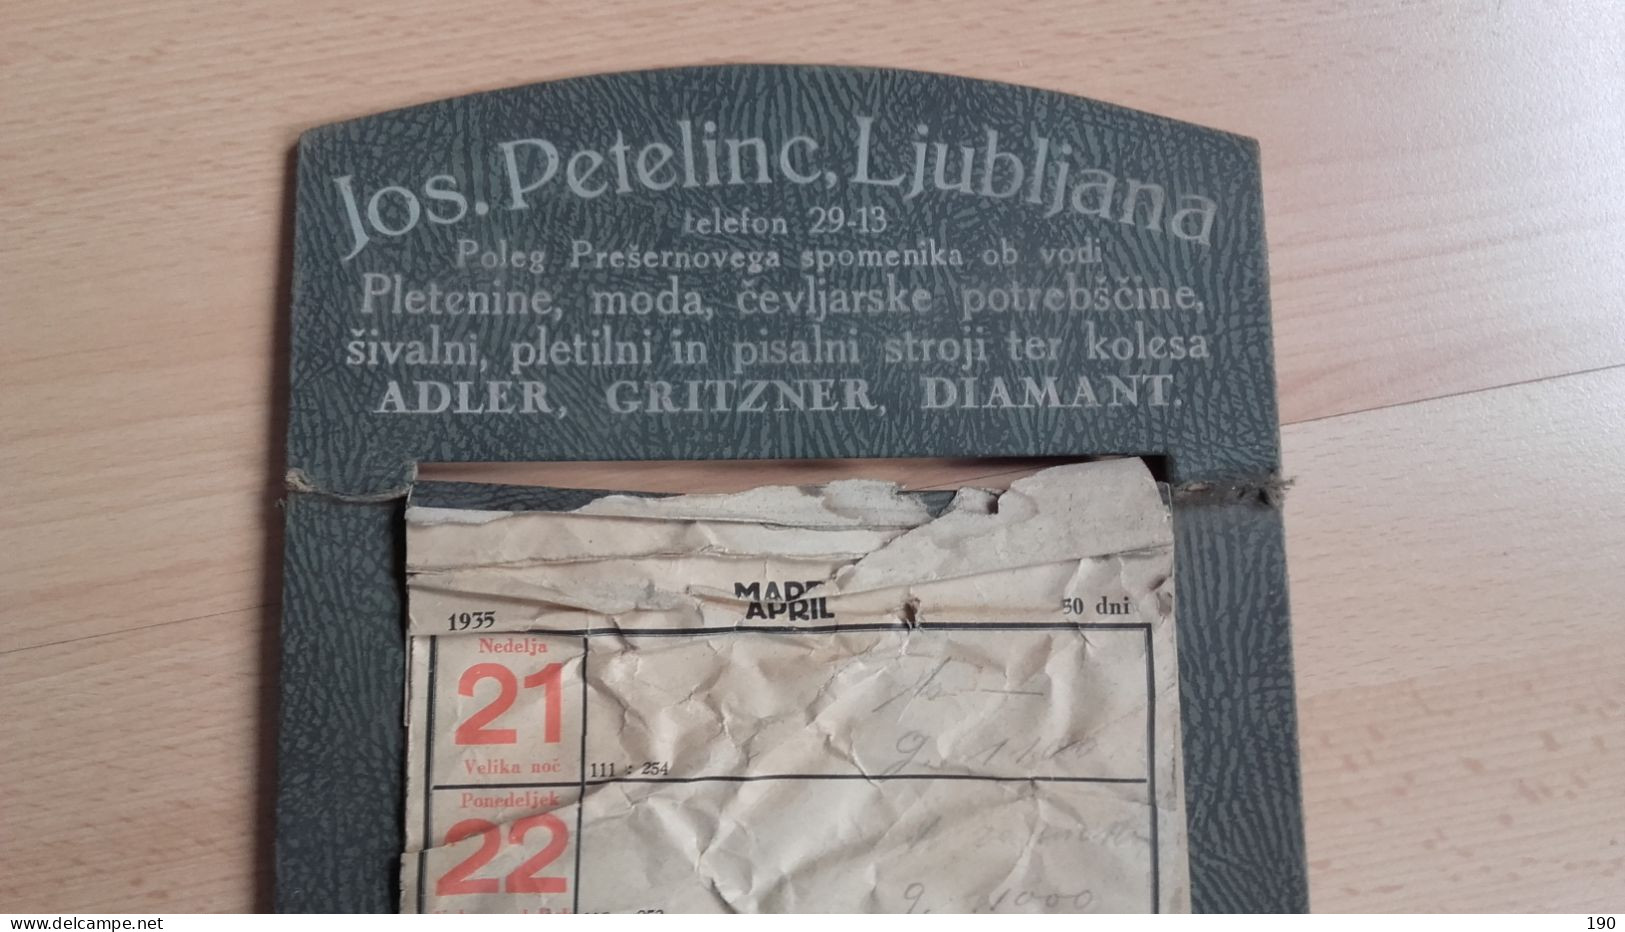 Josip Petelinc,Ljubljana:pletenine,moda,kolesa Adler,Gritzner,Diamant.Trgovina/store - Grossformat : 1921-40